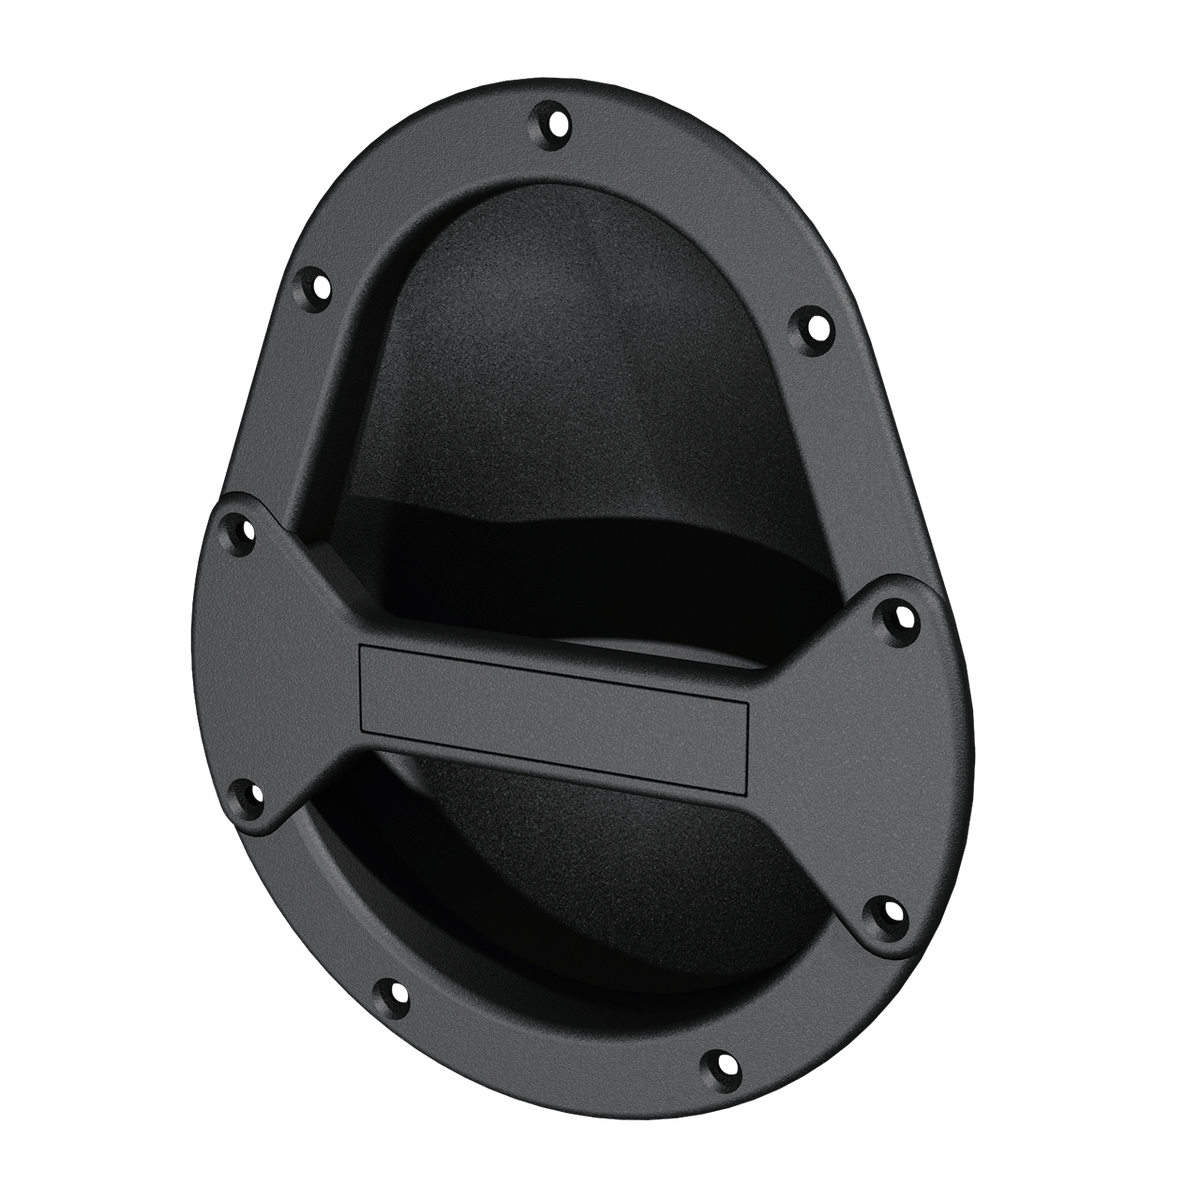 Tear-dropped shaped speaker handle